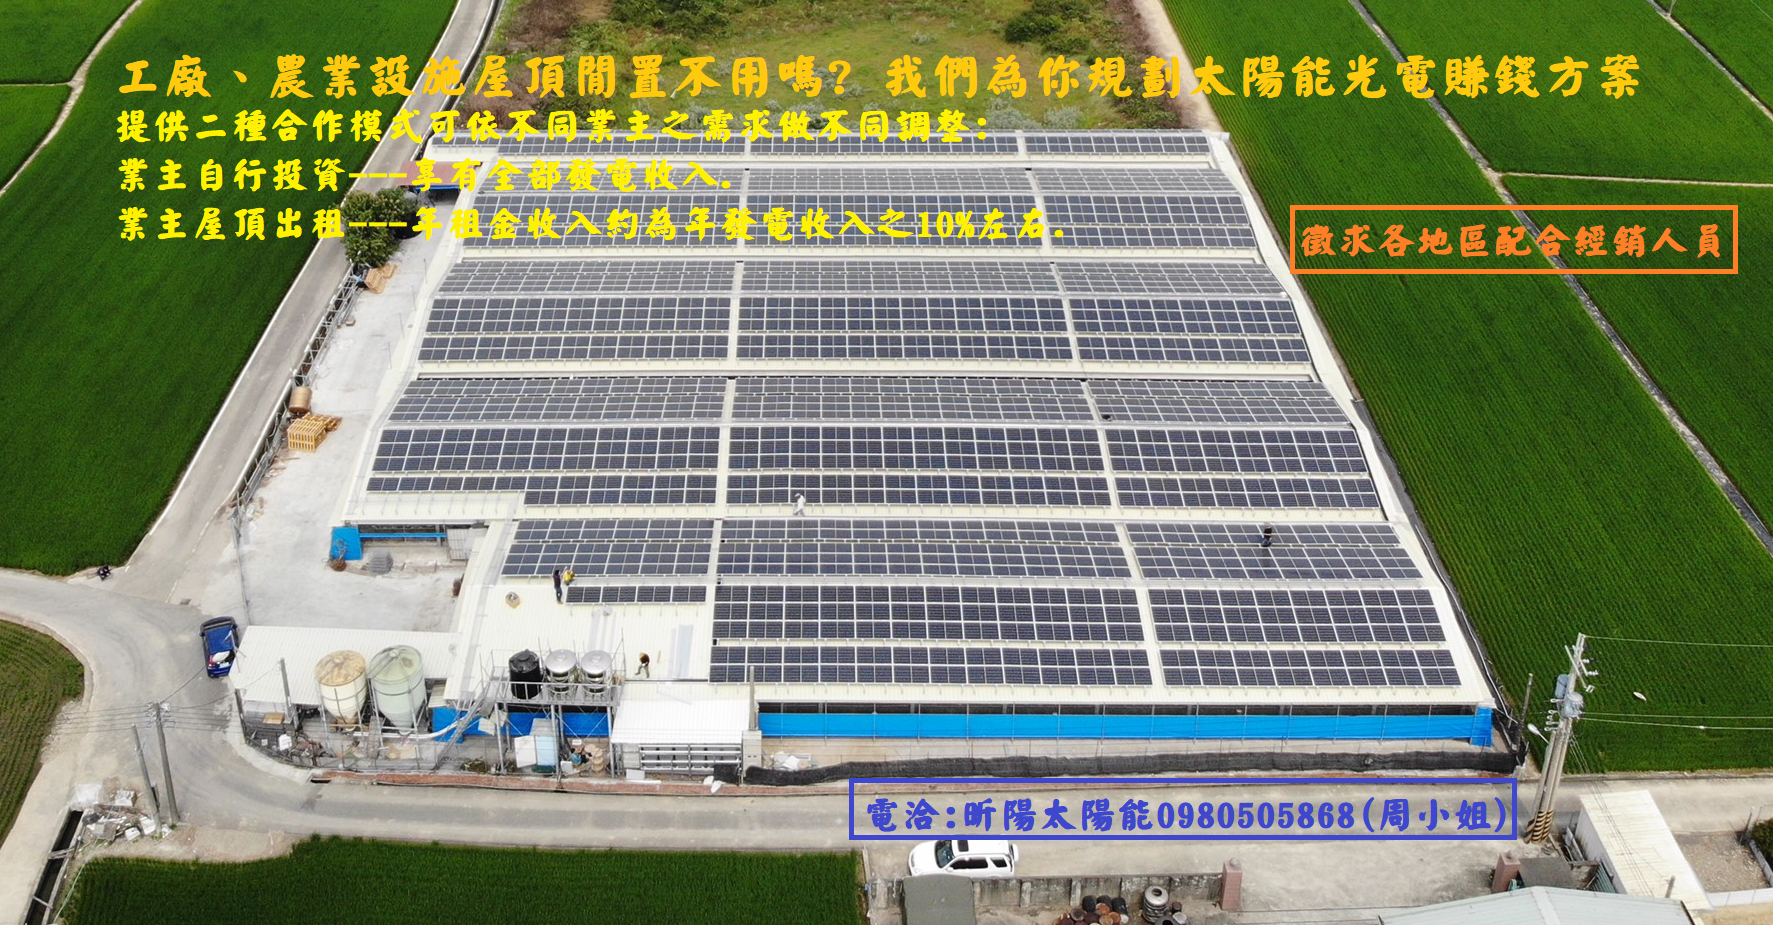 1583378805_高雄太陽能 工廠 農業設施屋頂閒置不用嗎  我們為你規劃太陽能光電賺錢方案.png